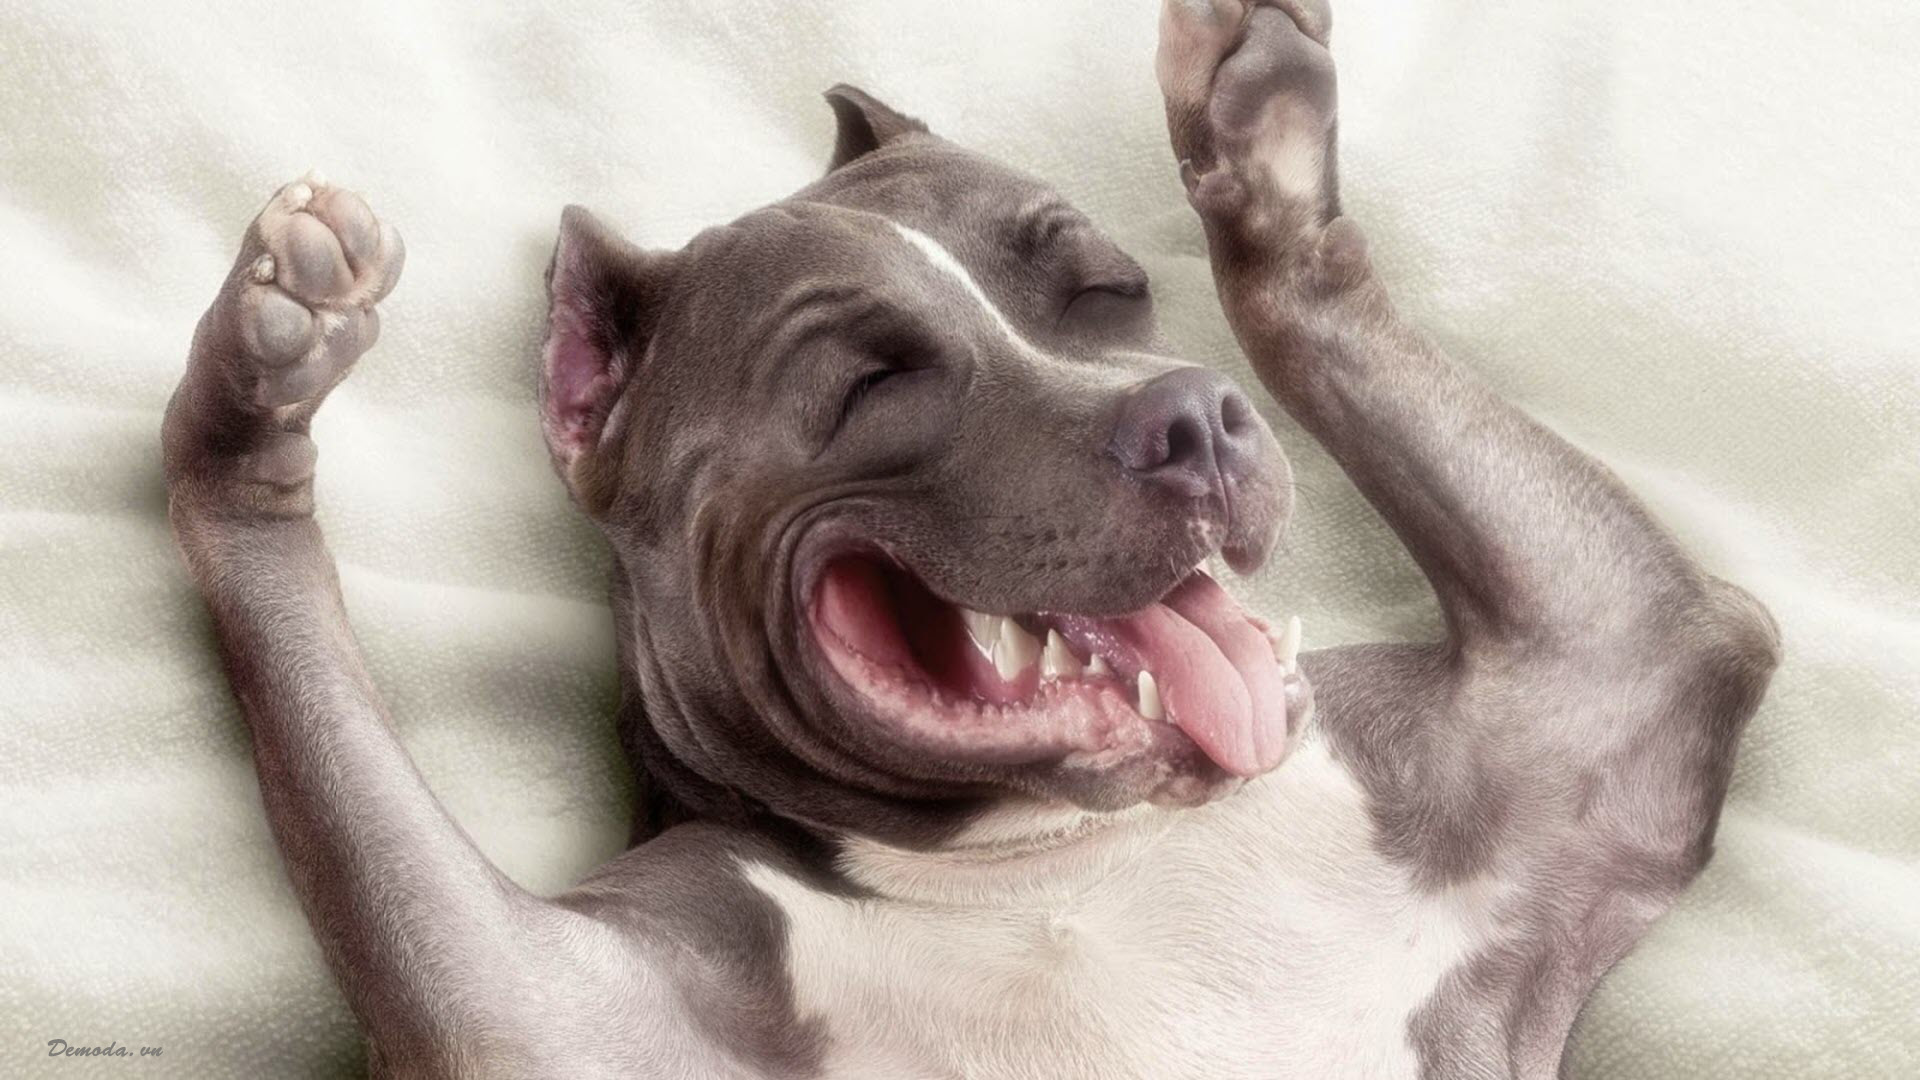 Nếu bạn cần một liều cười để giải tỏa căng thẳng, hãy xem những hình ảnh chó hài hước. Chúng sẽ khiến bạn không thể nhịn được cười vì những hành động dễ thương và ngộ nghĩnh của chúng.